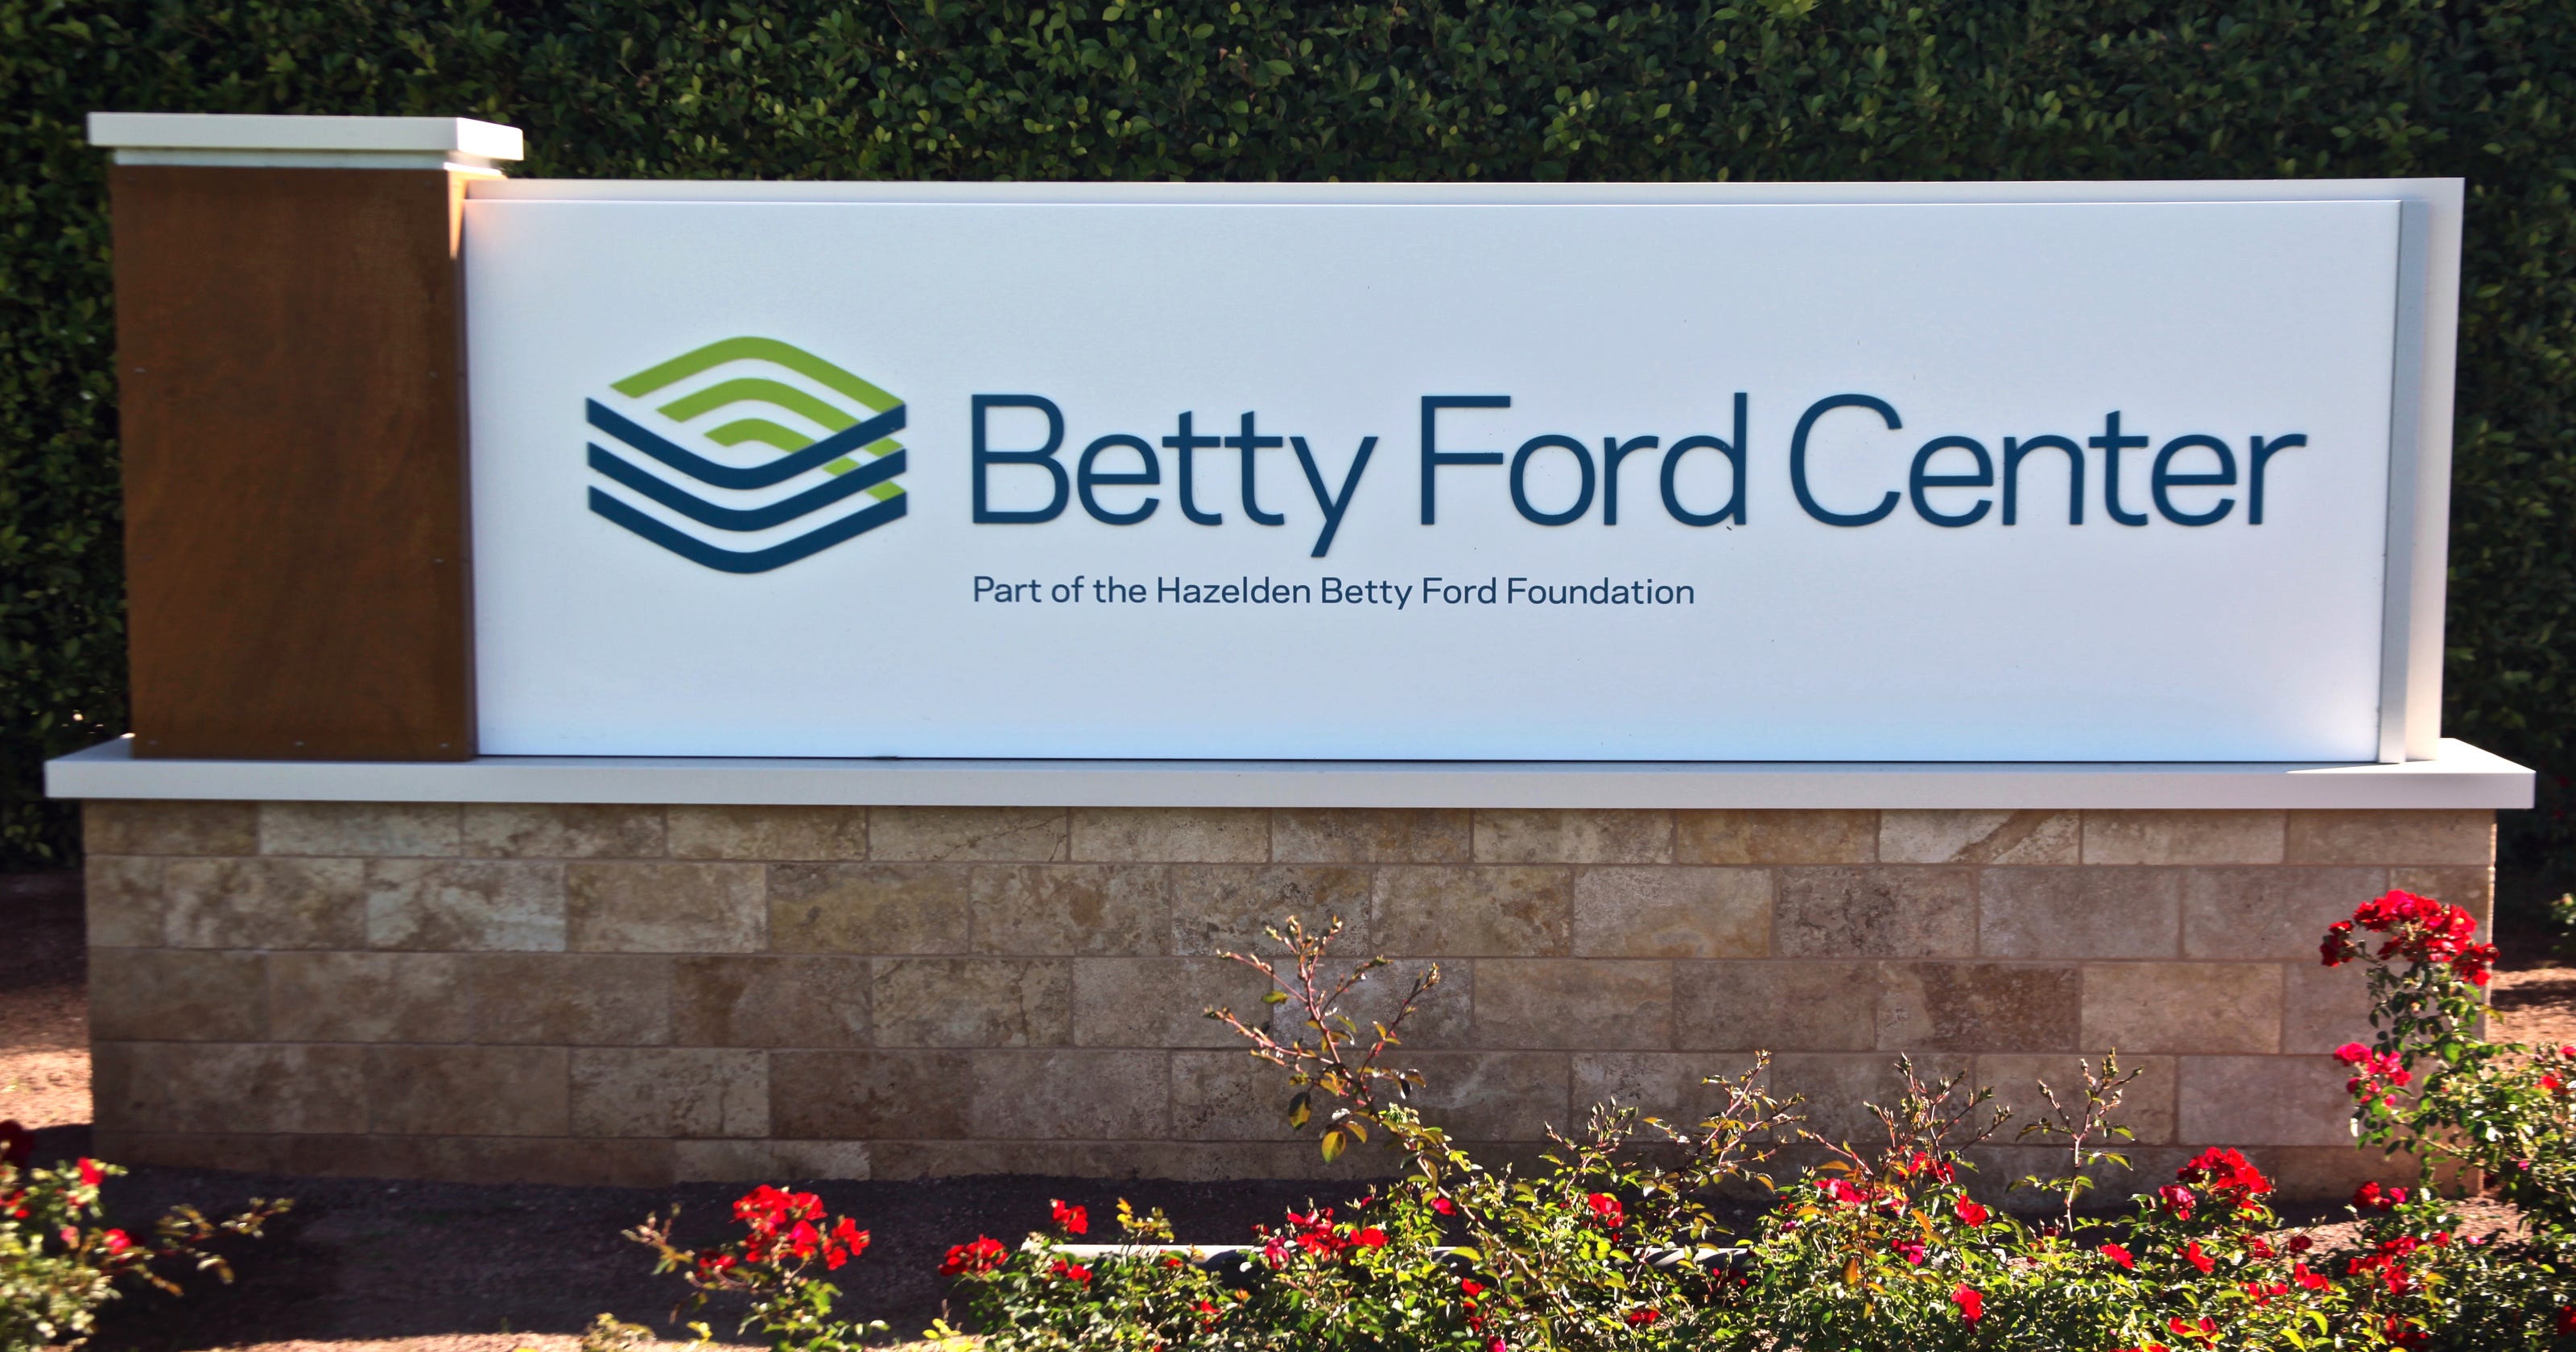 Betty Ford Center cuts staff as part of Hazelden plan